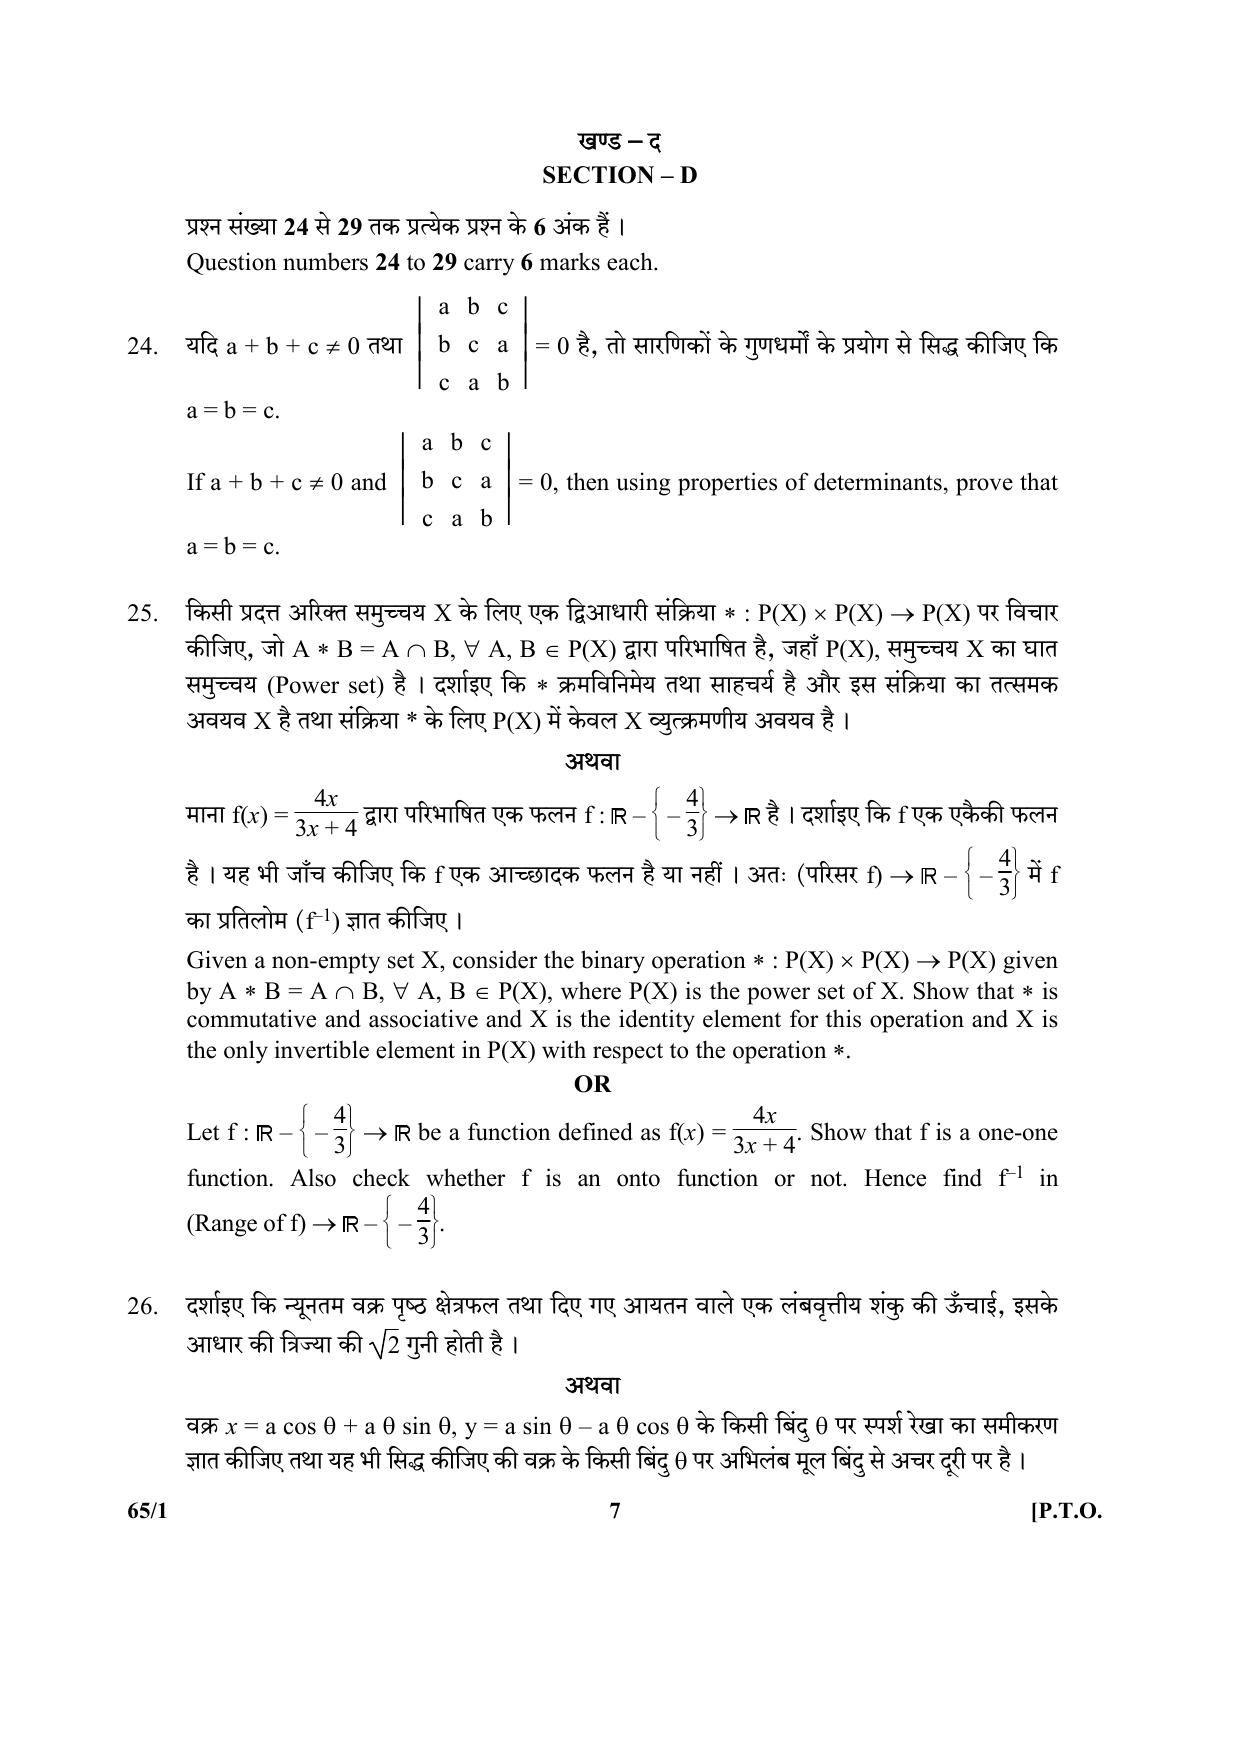 CBSE Class 12 65-1 (Mathematics) 2017-comptt Question Paper - Page 7